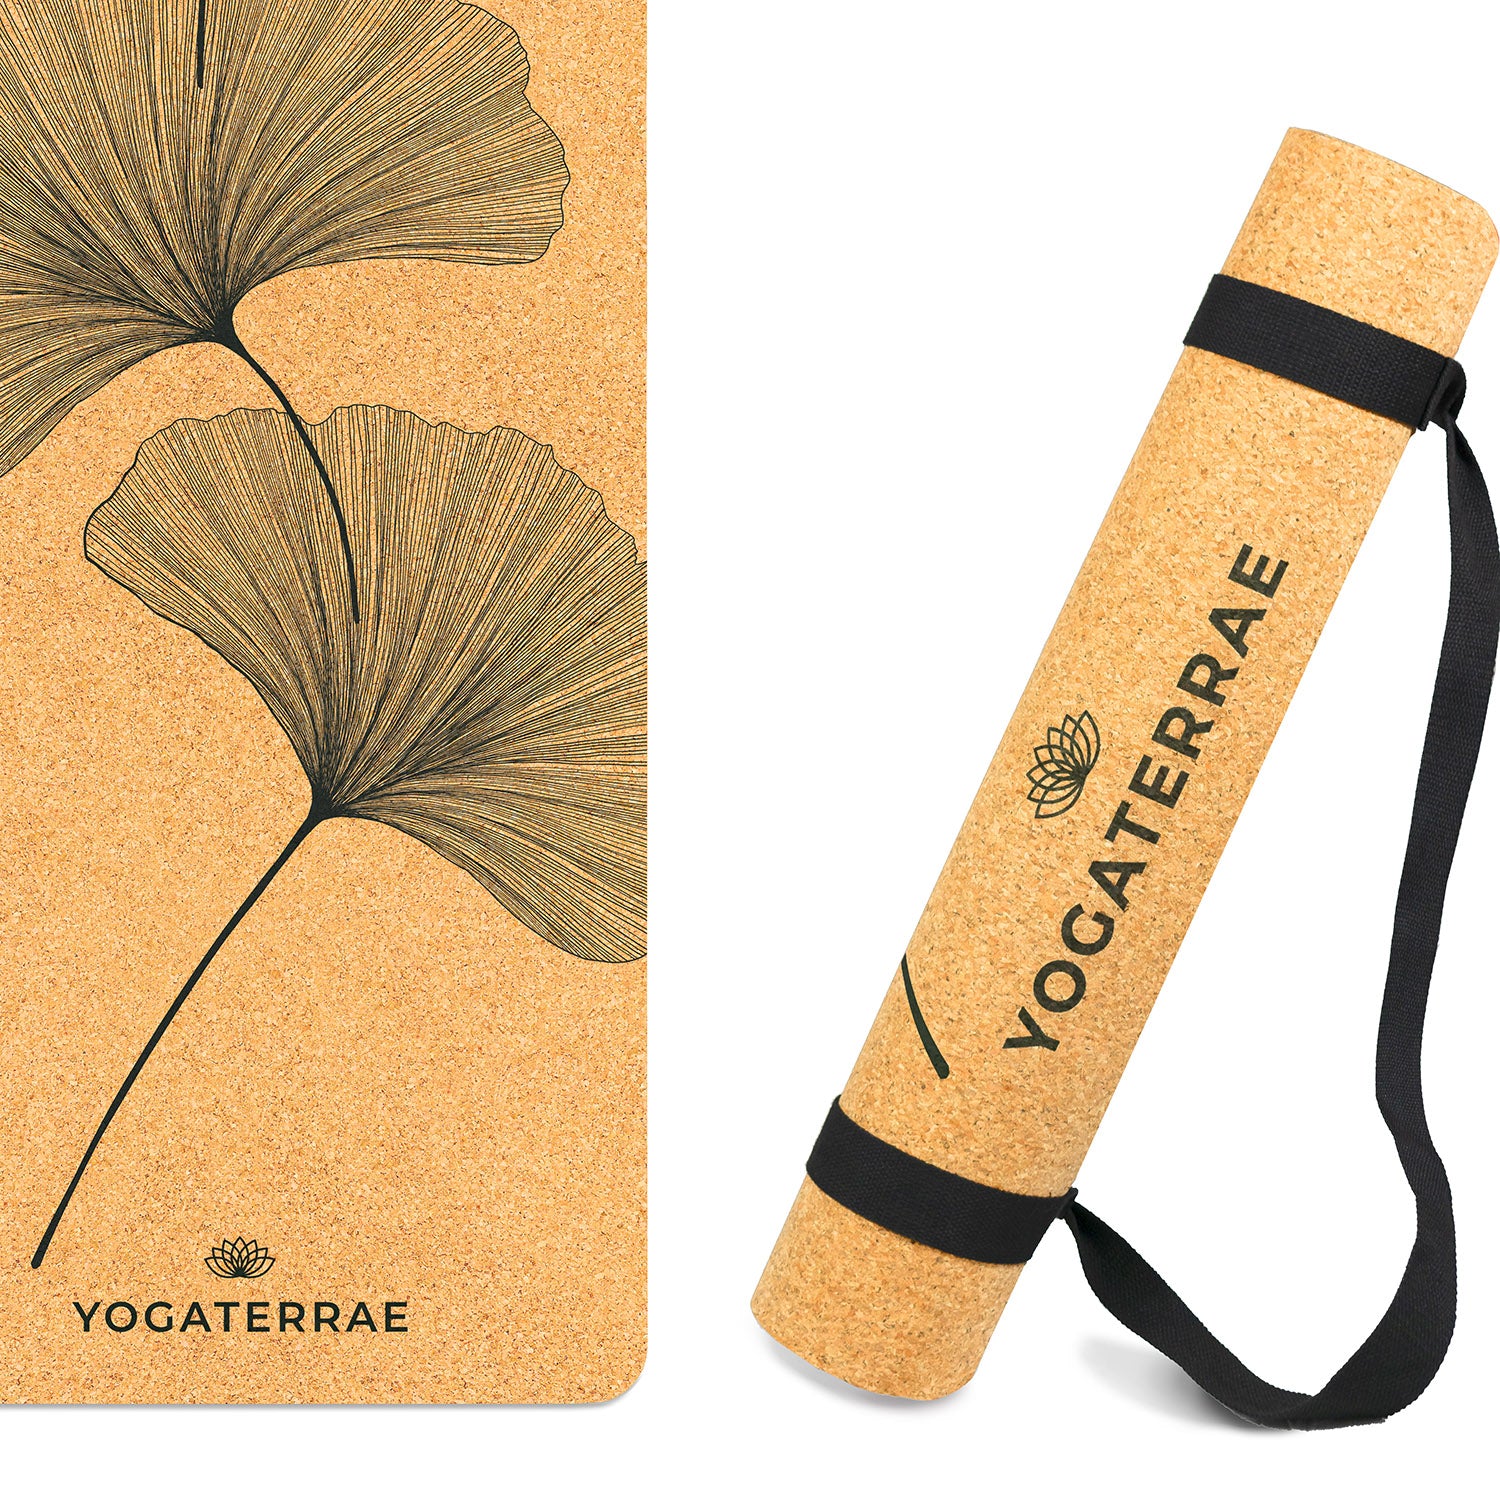 Tapis de yoga liège et caoutchouc naturels antidérapant écologique Ginkgos Yin Yang + sangle d'étirements et de transport YOGATERRAE marque française